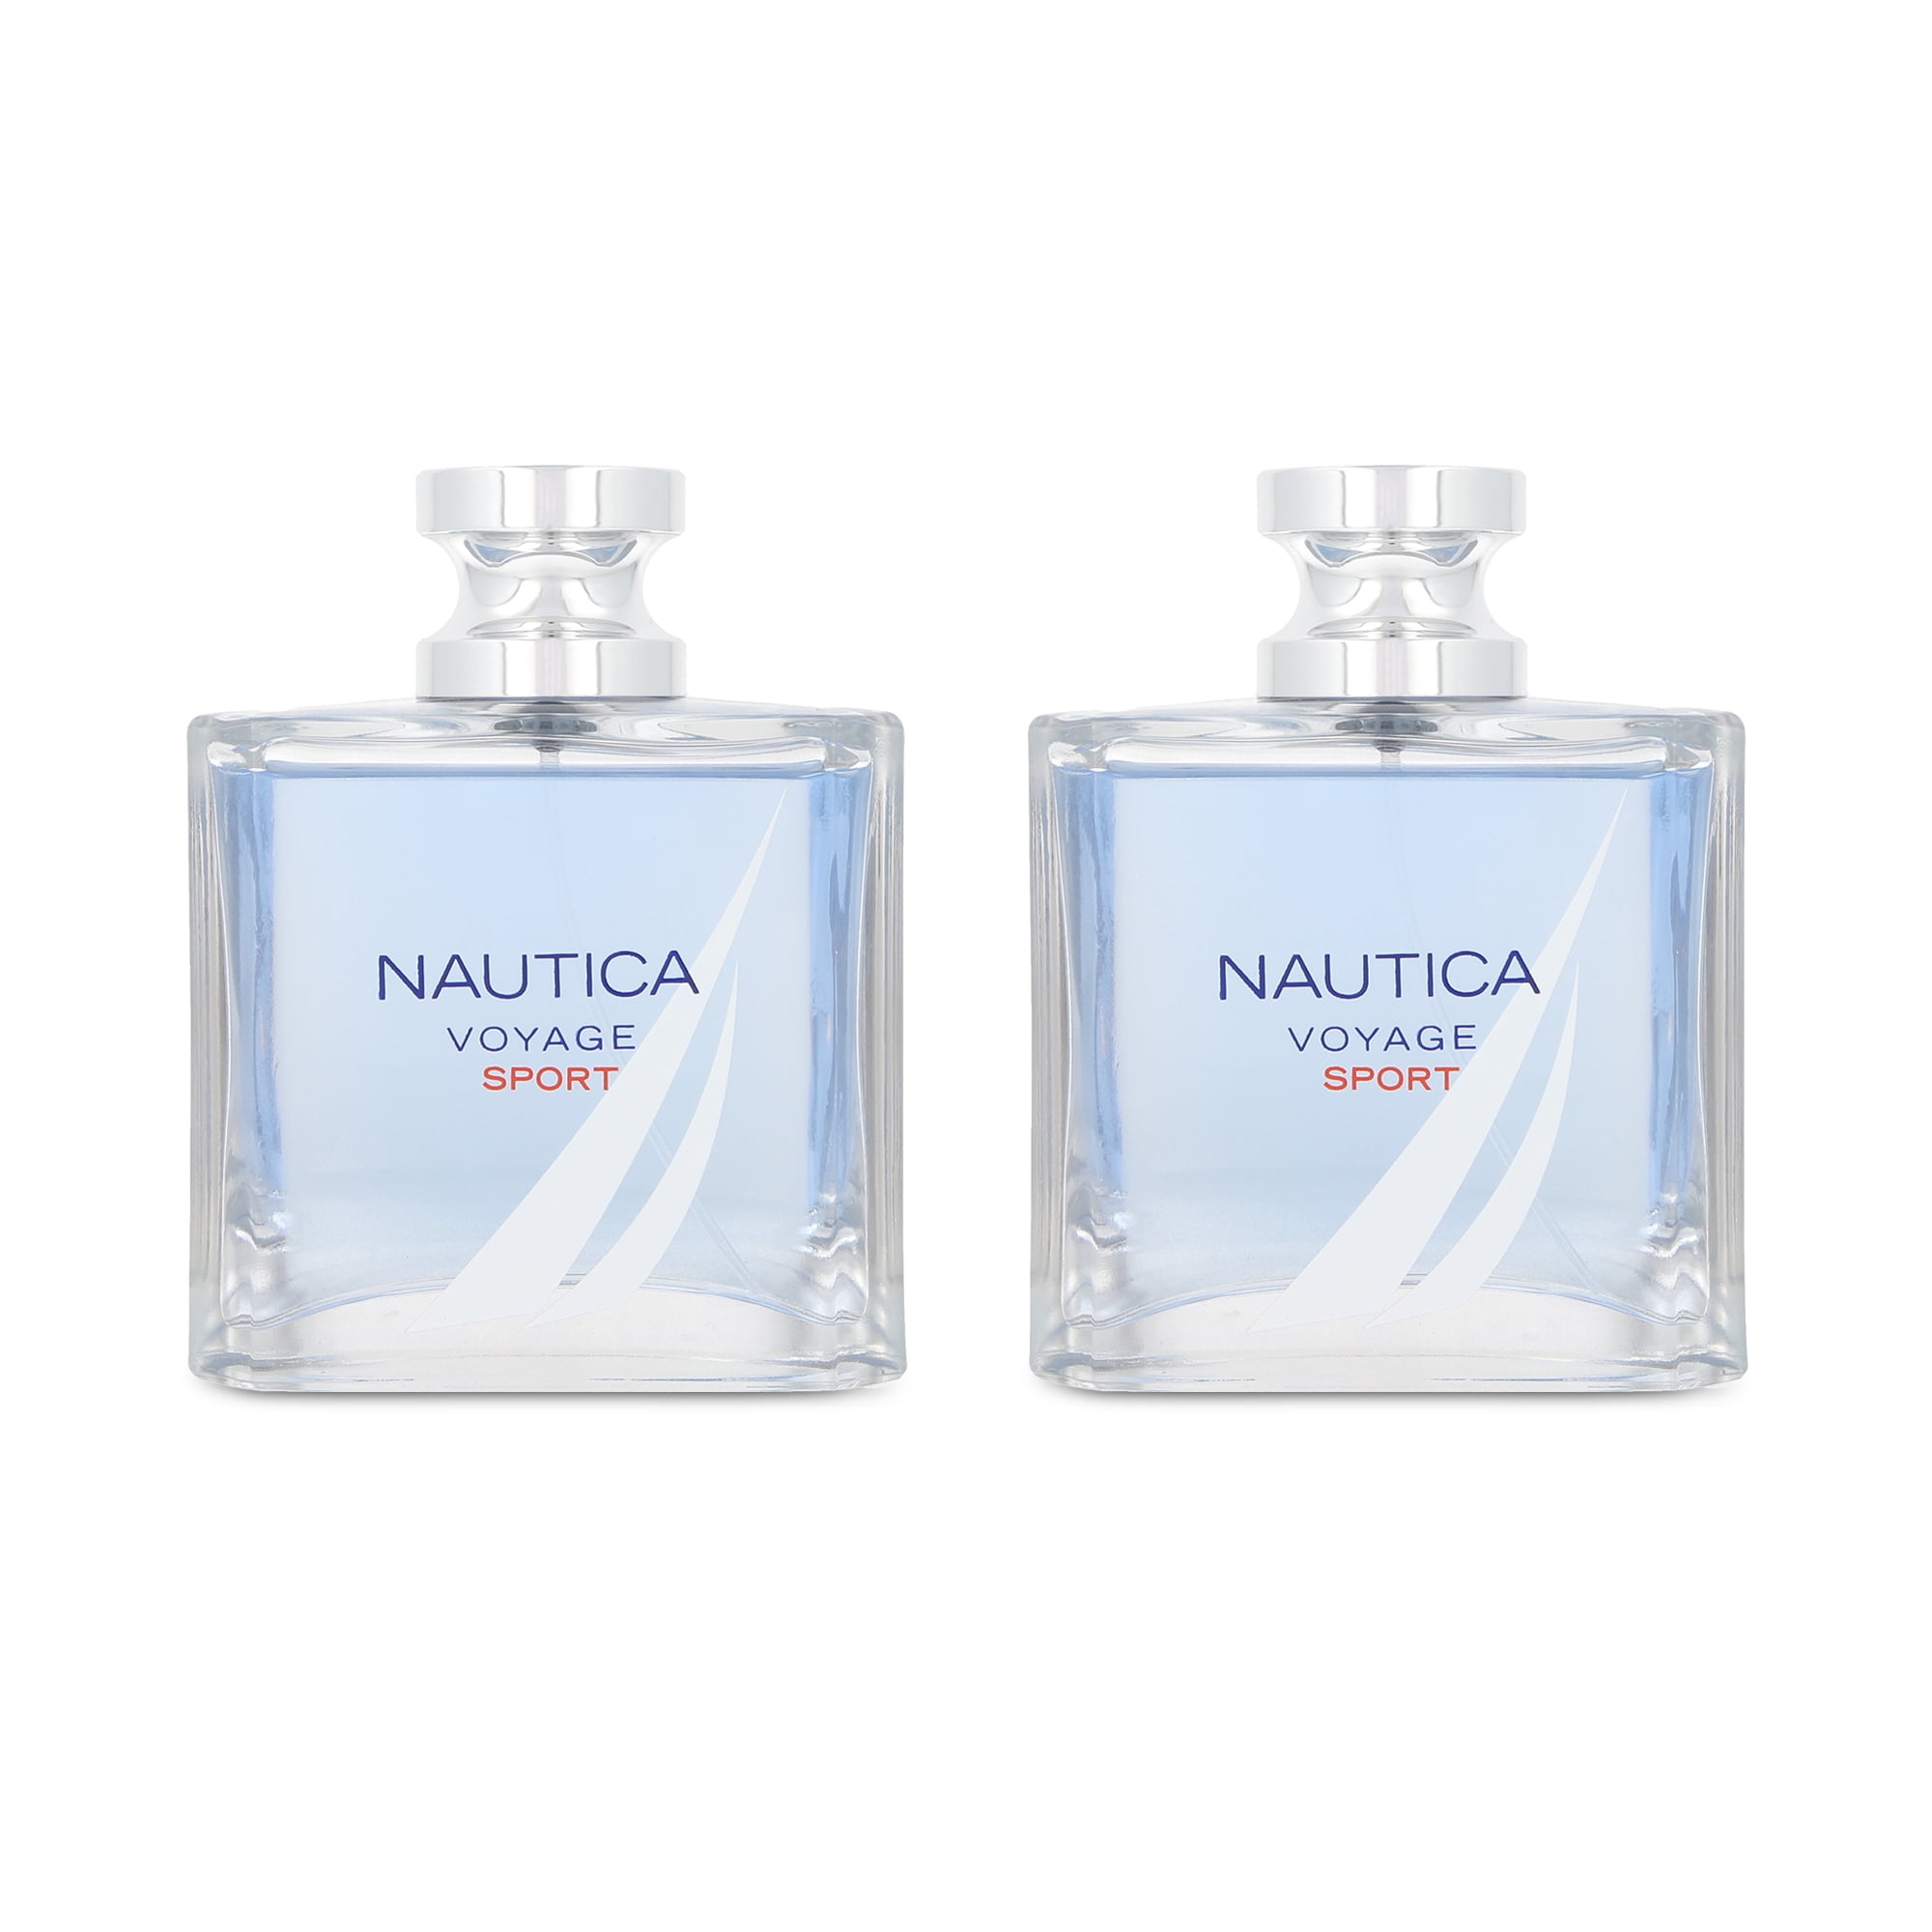 Le Parfumier - Nautica Voyage N-83 For Men Eau de Toilette - Le